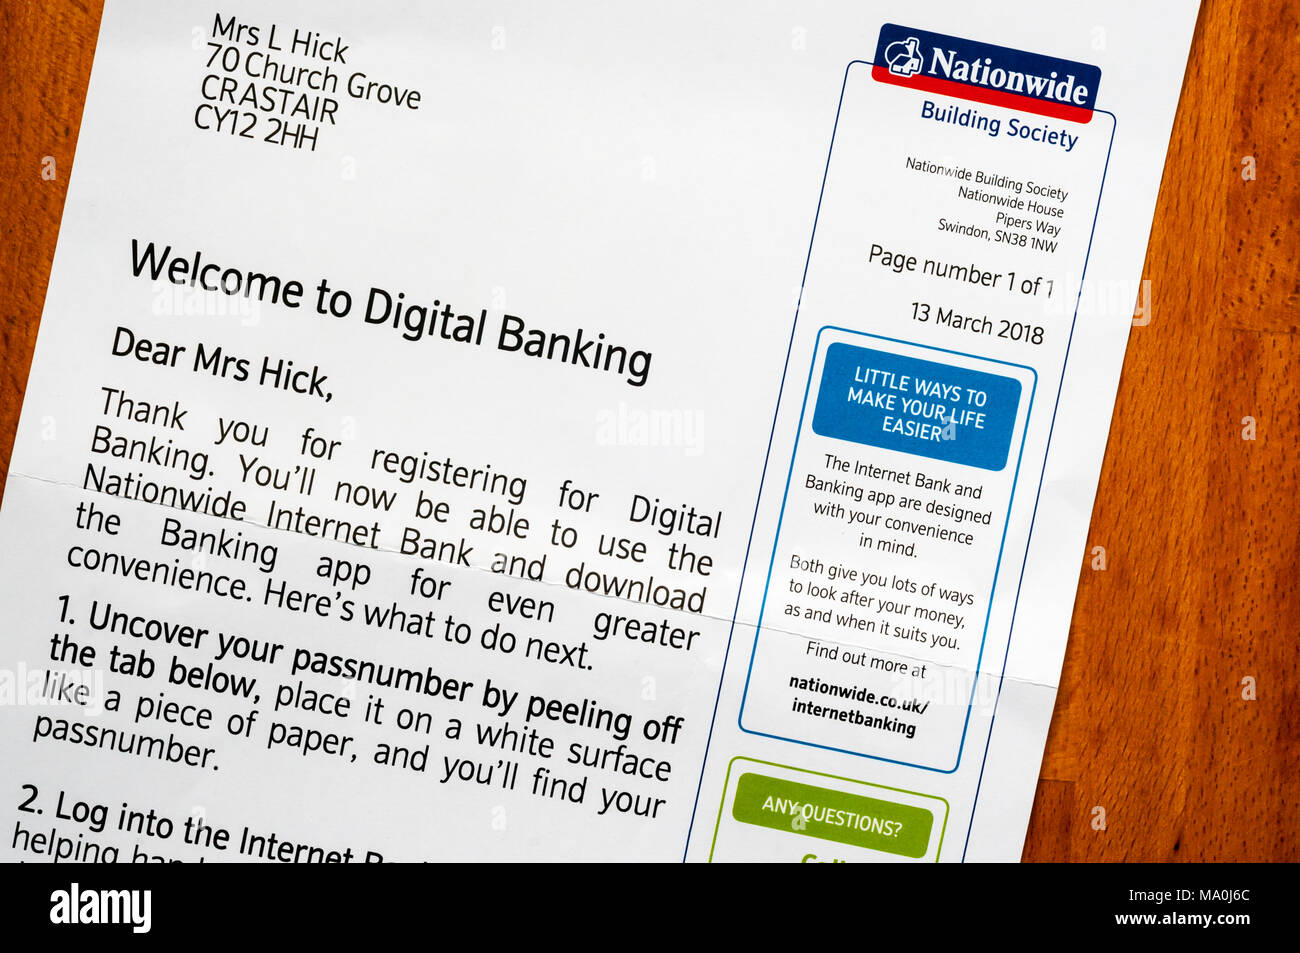 Nationwide Building Society schreiben in großer Schrift, die Begrüßung eines Kunden mit digitalen Banking. NB: Einzelheiten anonymisiert wurden. Stockfoto